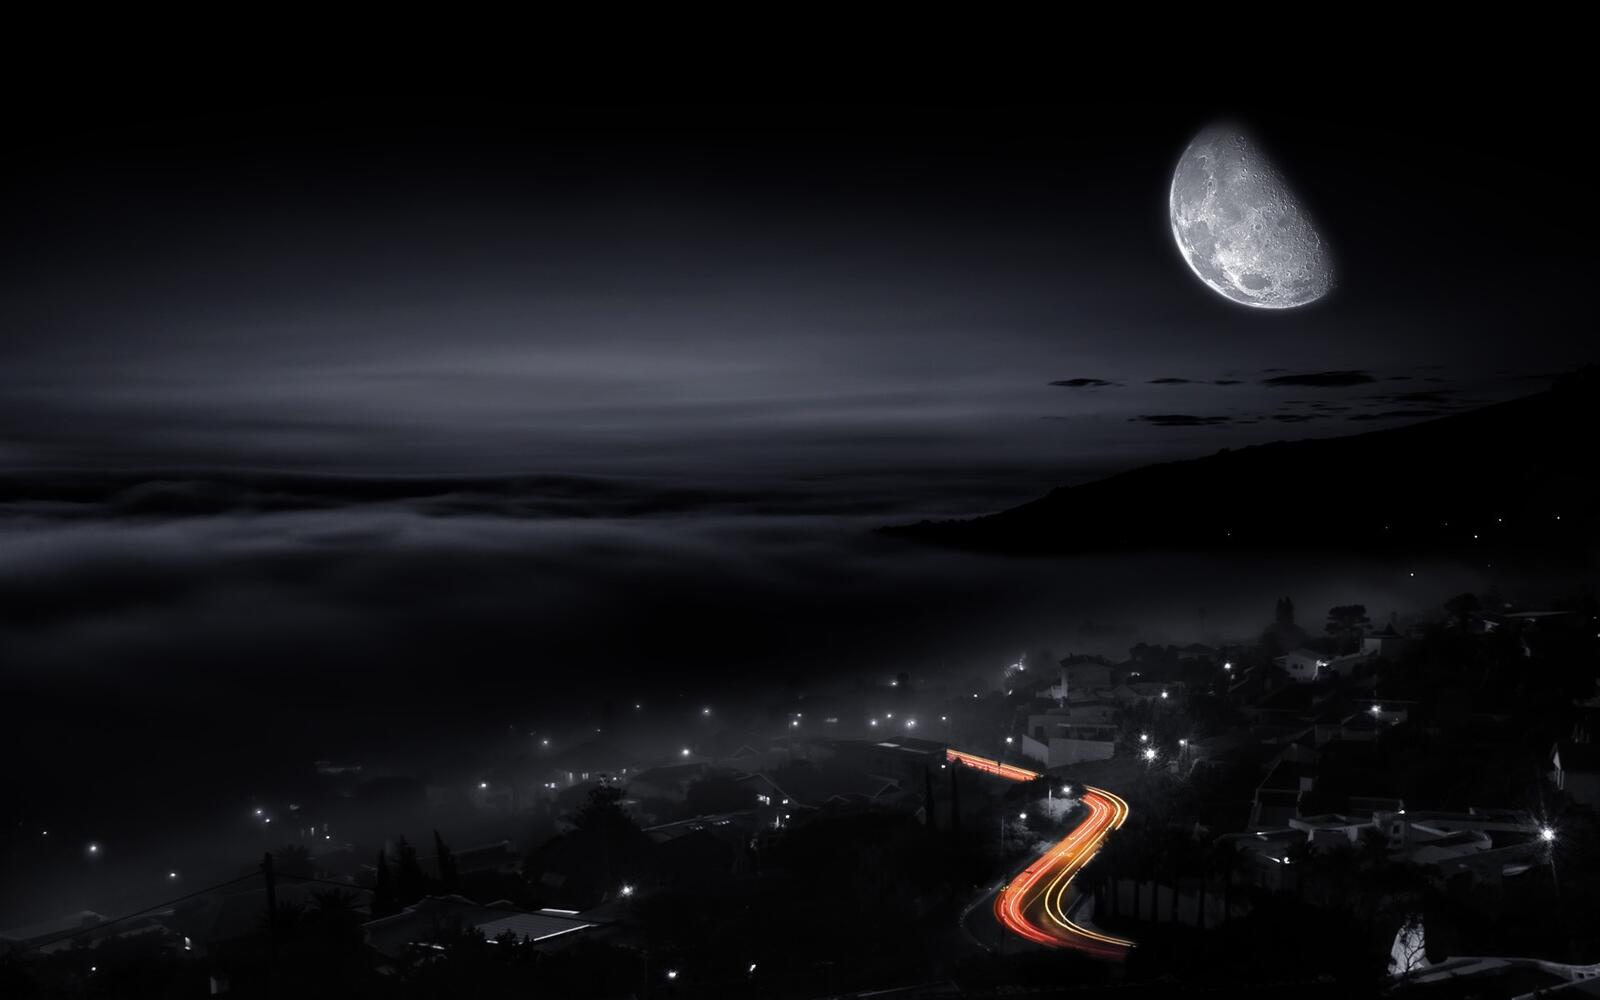 Обои с изображением луны над ночным городом